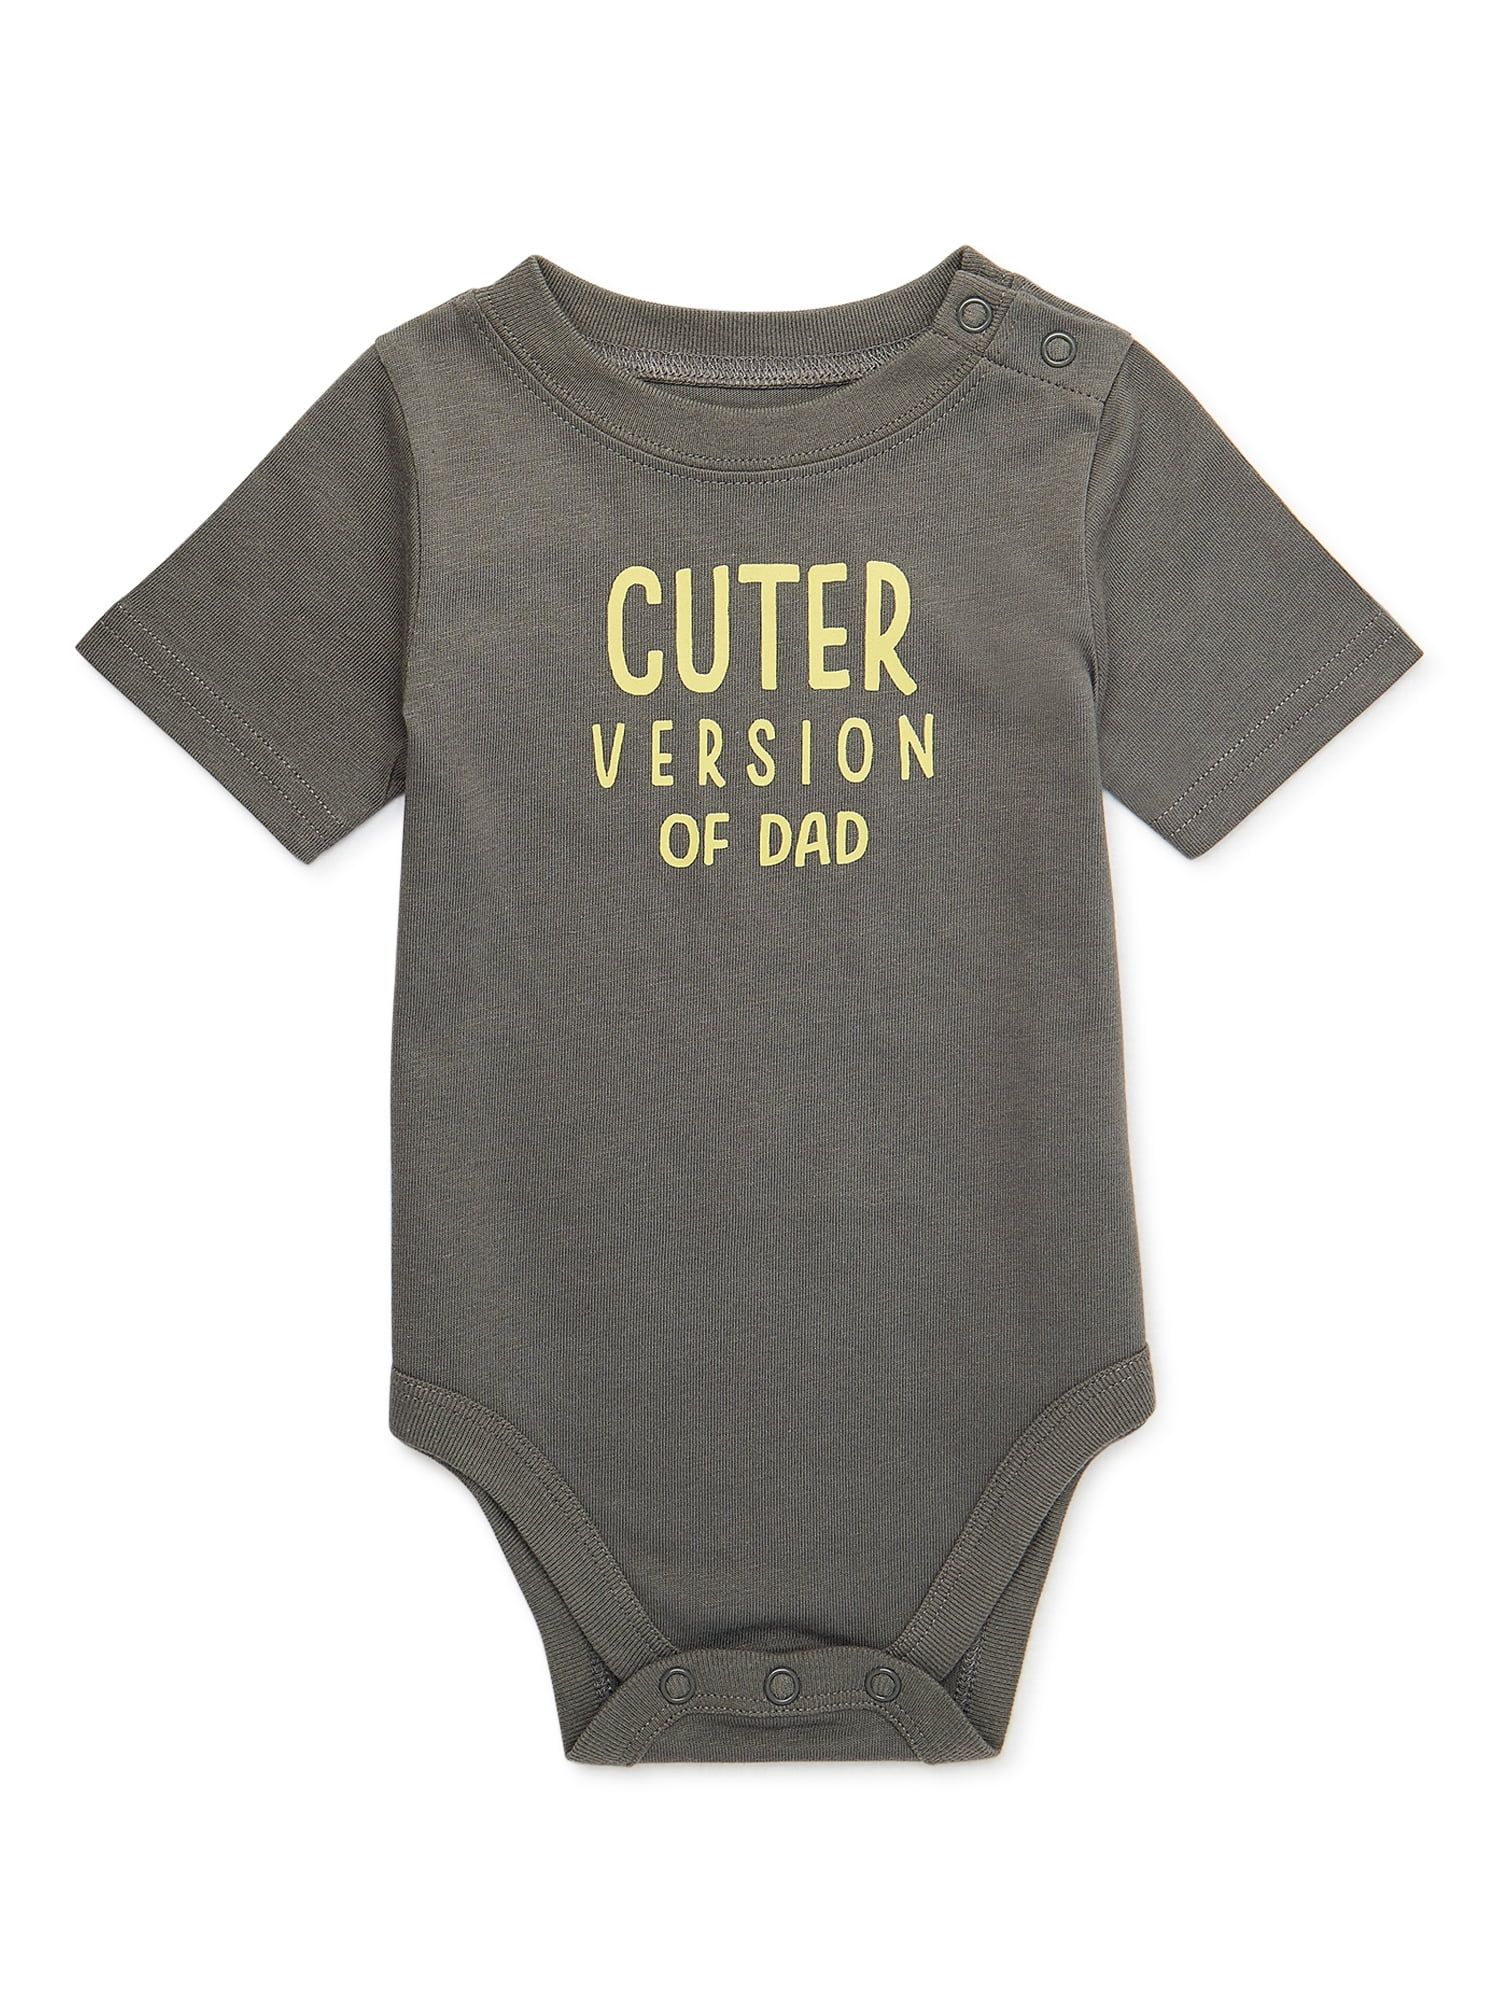 Garanimals Baby Boy Short Sleeve Graphic Bodysuit, Sizes 0-24 Months - Walmart.com | Walmart (US)